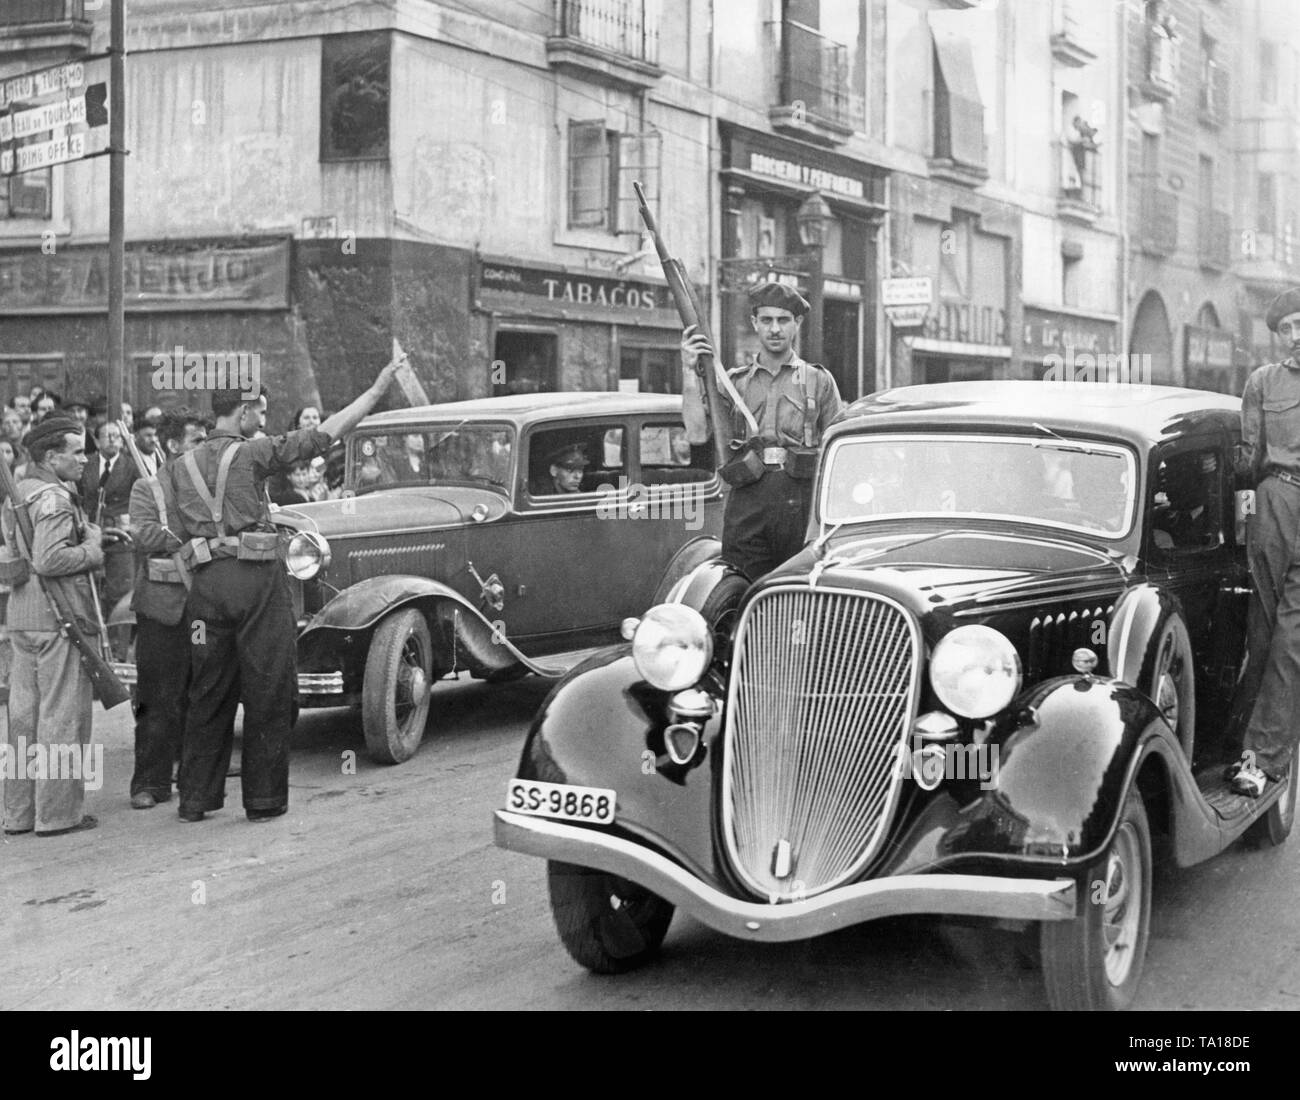 Foto von Autos in den Straßen von Madrid nach dem spanischen Volksaufstand in Madrid am 18. Juli 1936. Die Kämpfer stehen auf der trittbretter der Autos, und Sie sind mit Karabiner bewaffnet. Im Hintergrund, andere Nutzfahrzeuge. Stockfoto